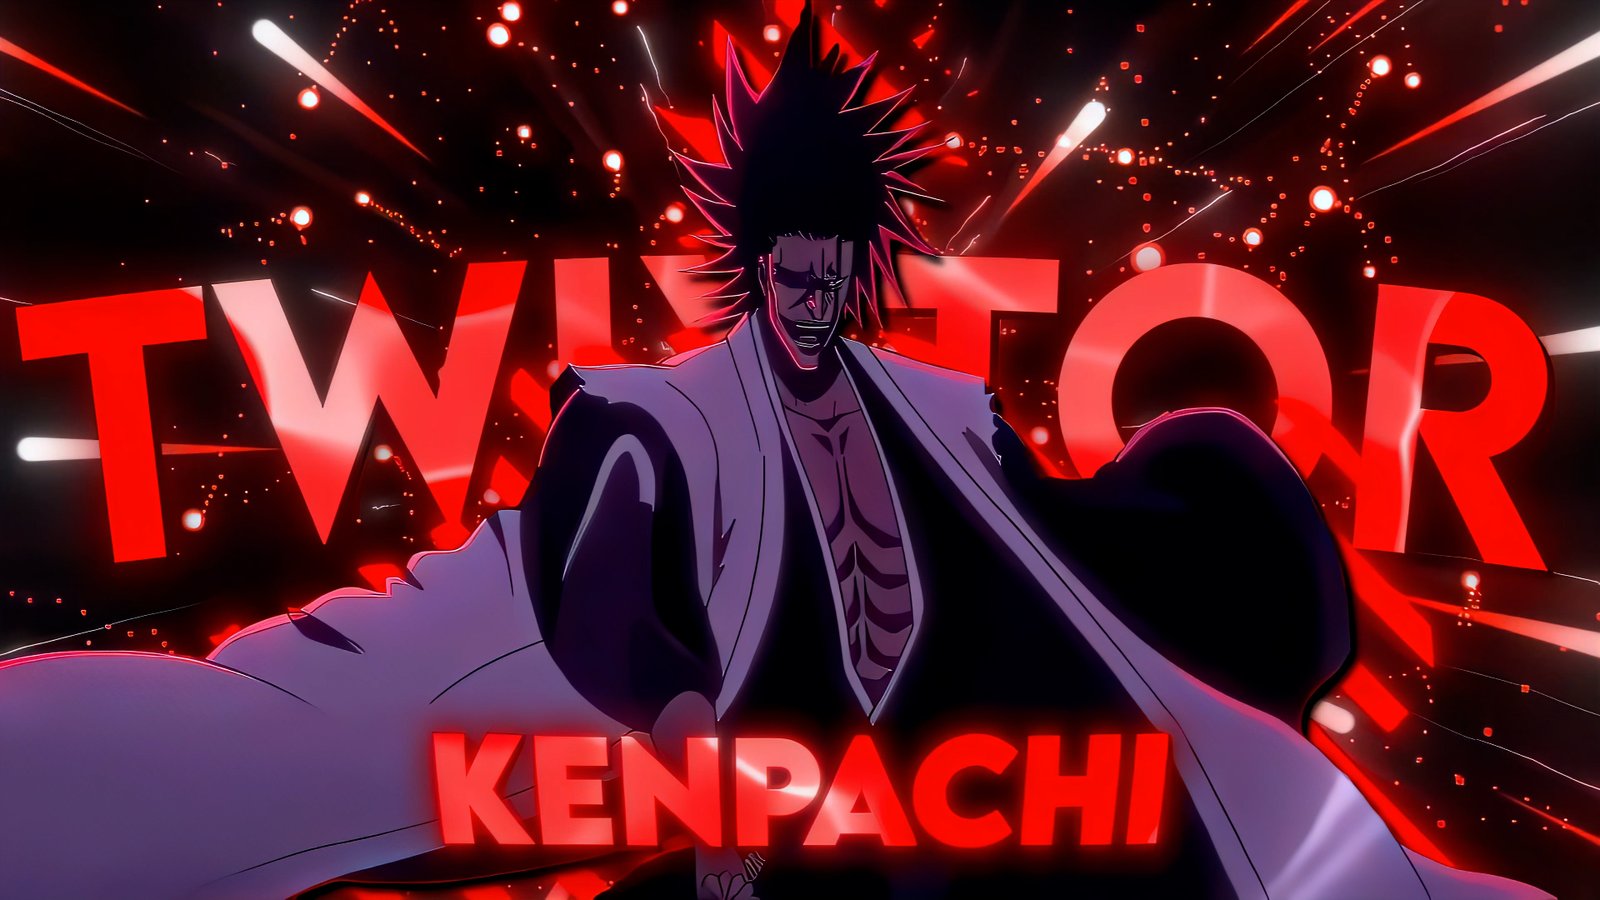 Kenpachi Twixtor